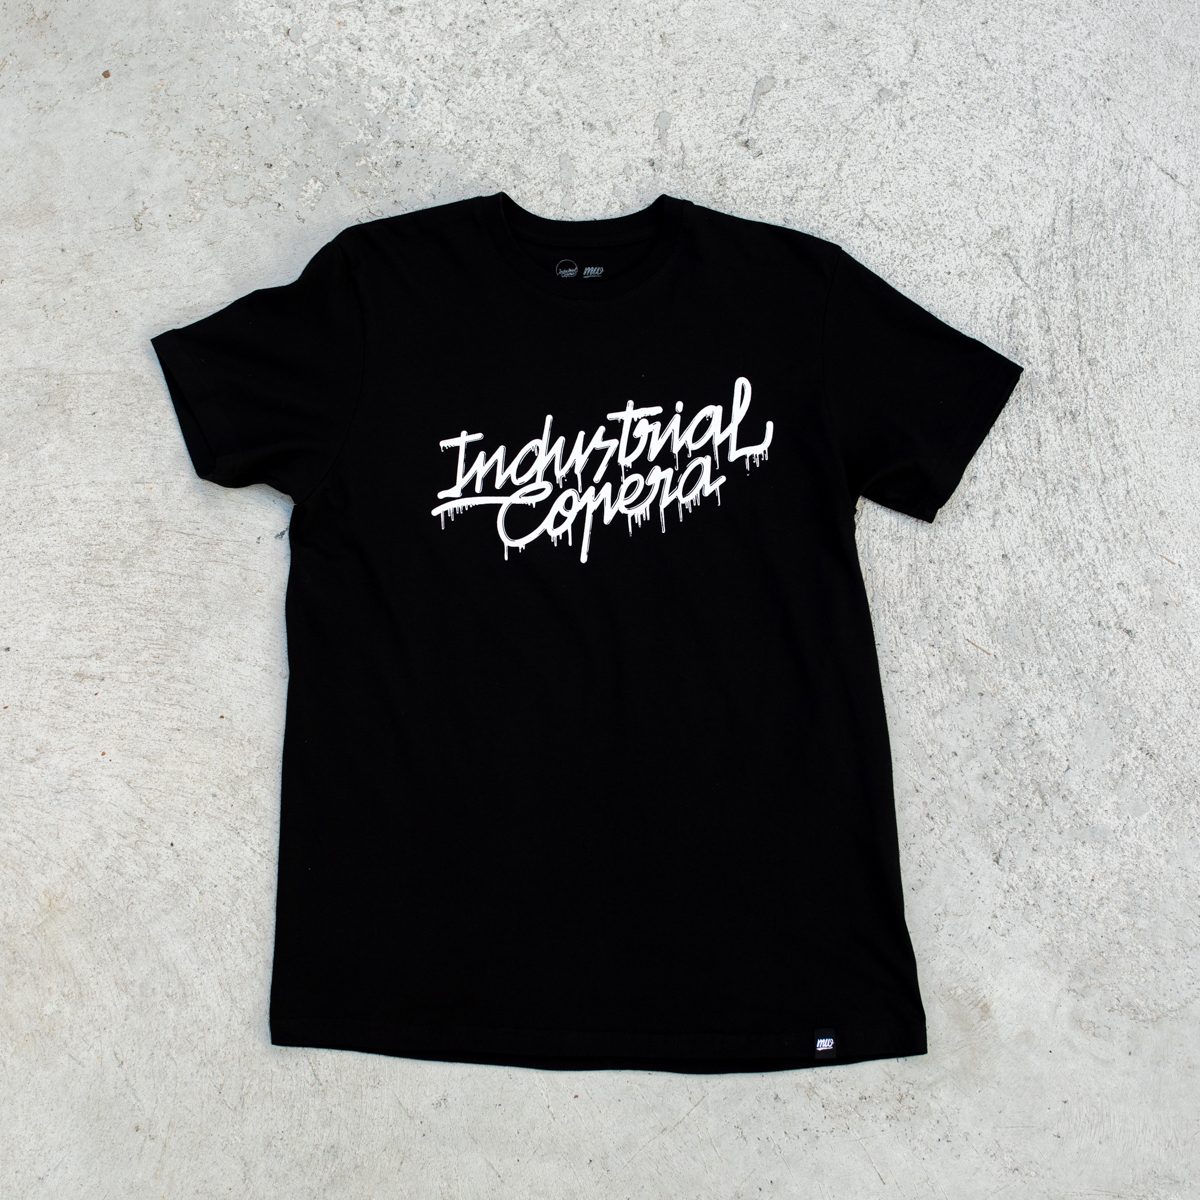 Camiseta negra Industrial Copera logo derretido